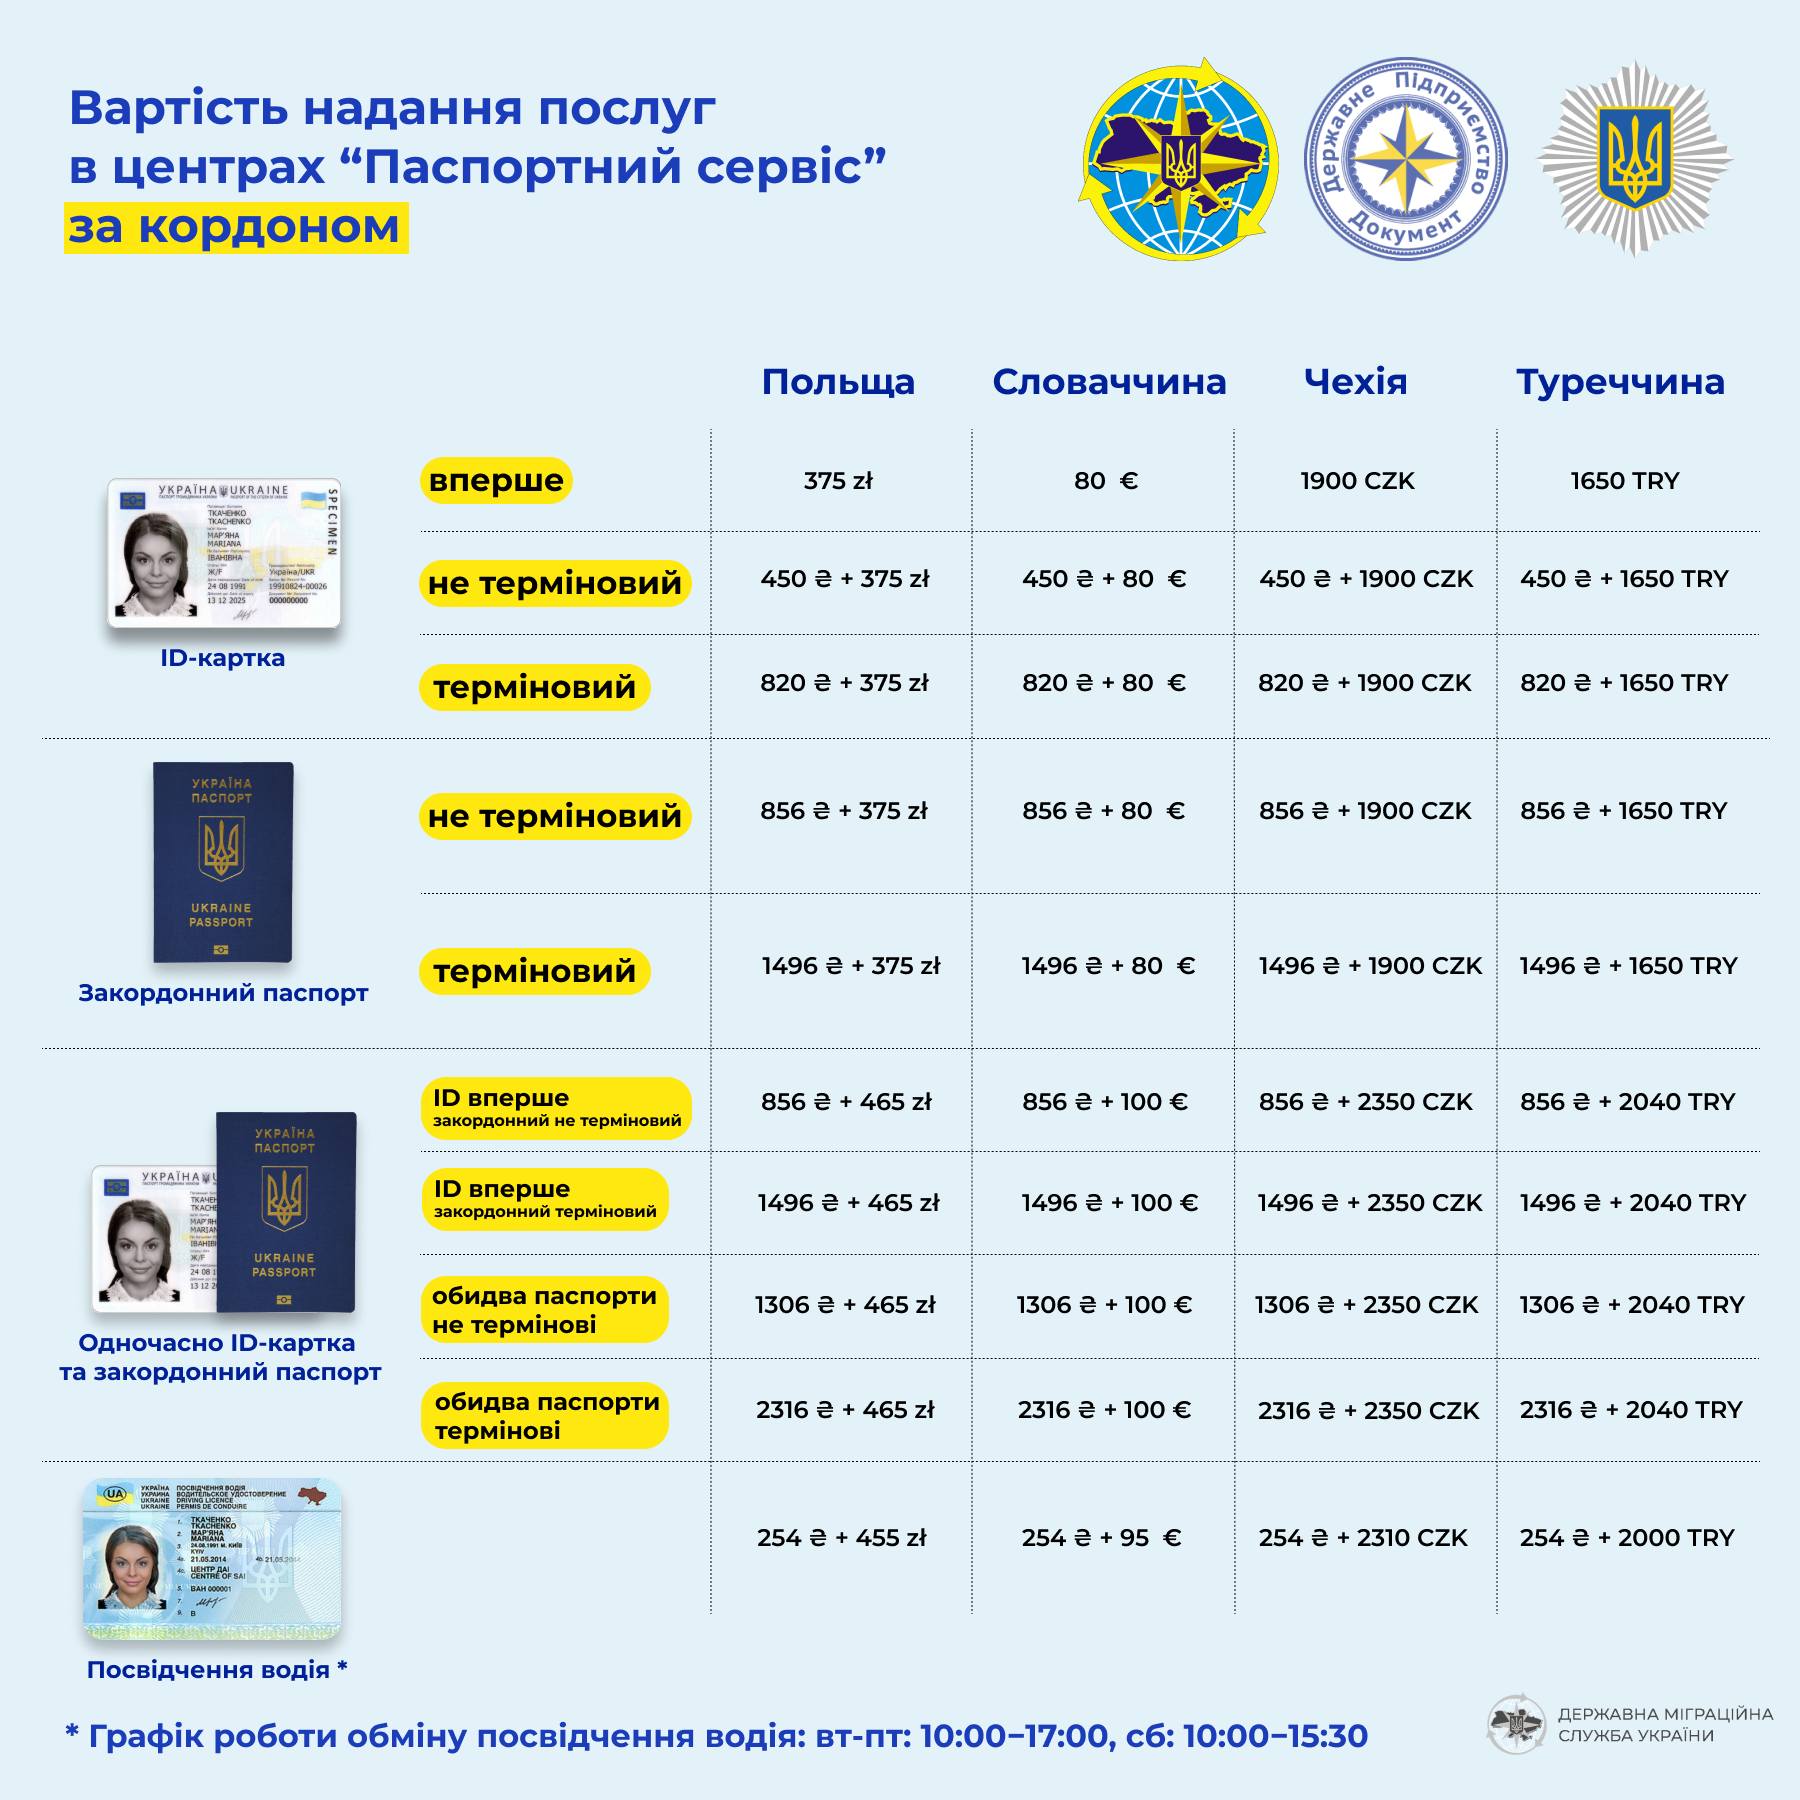 Сколько стоит для украинцев обмен водительских прав за границей